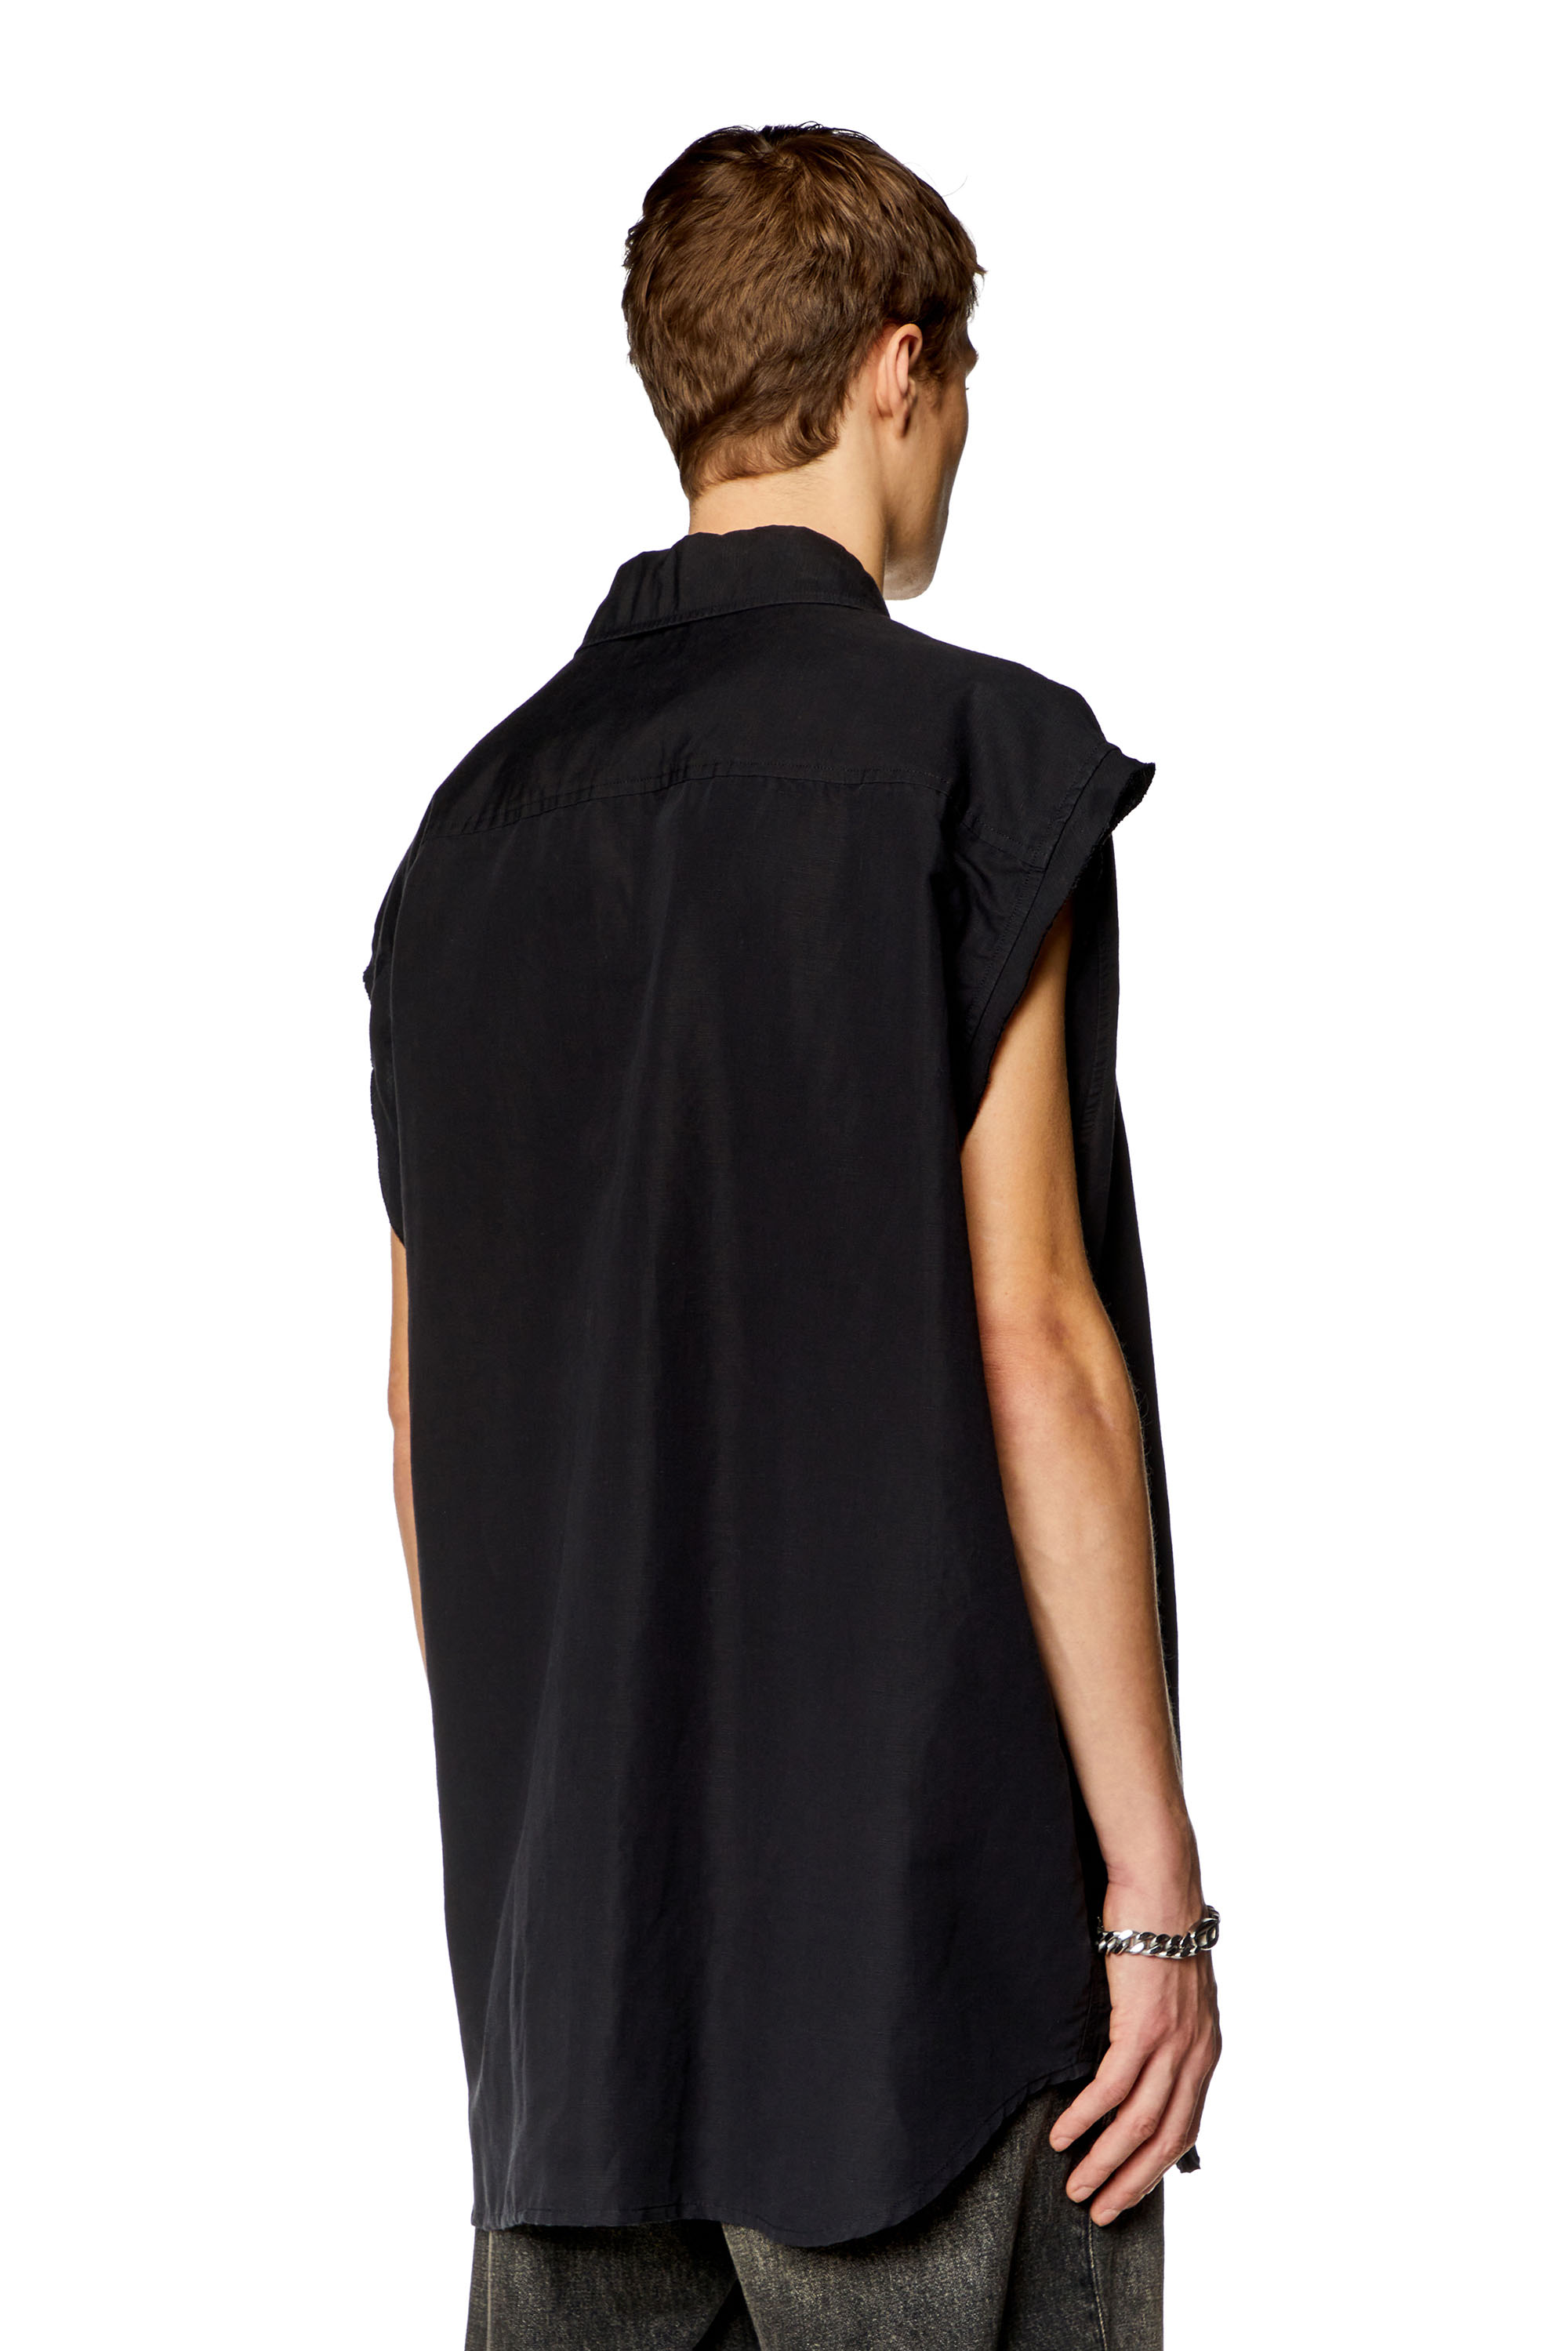 Diesel - S-SIMENS, Man Sleeveless shirt in linen blend in Black - Image 4